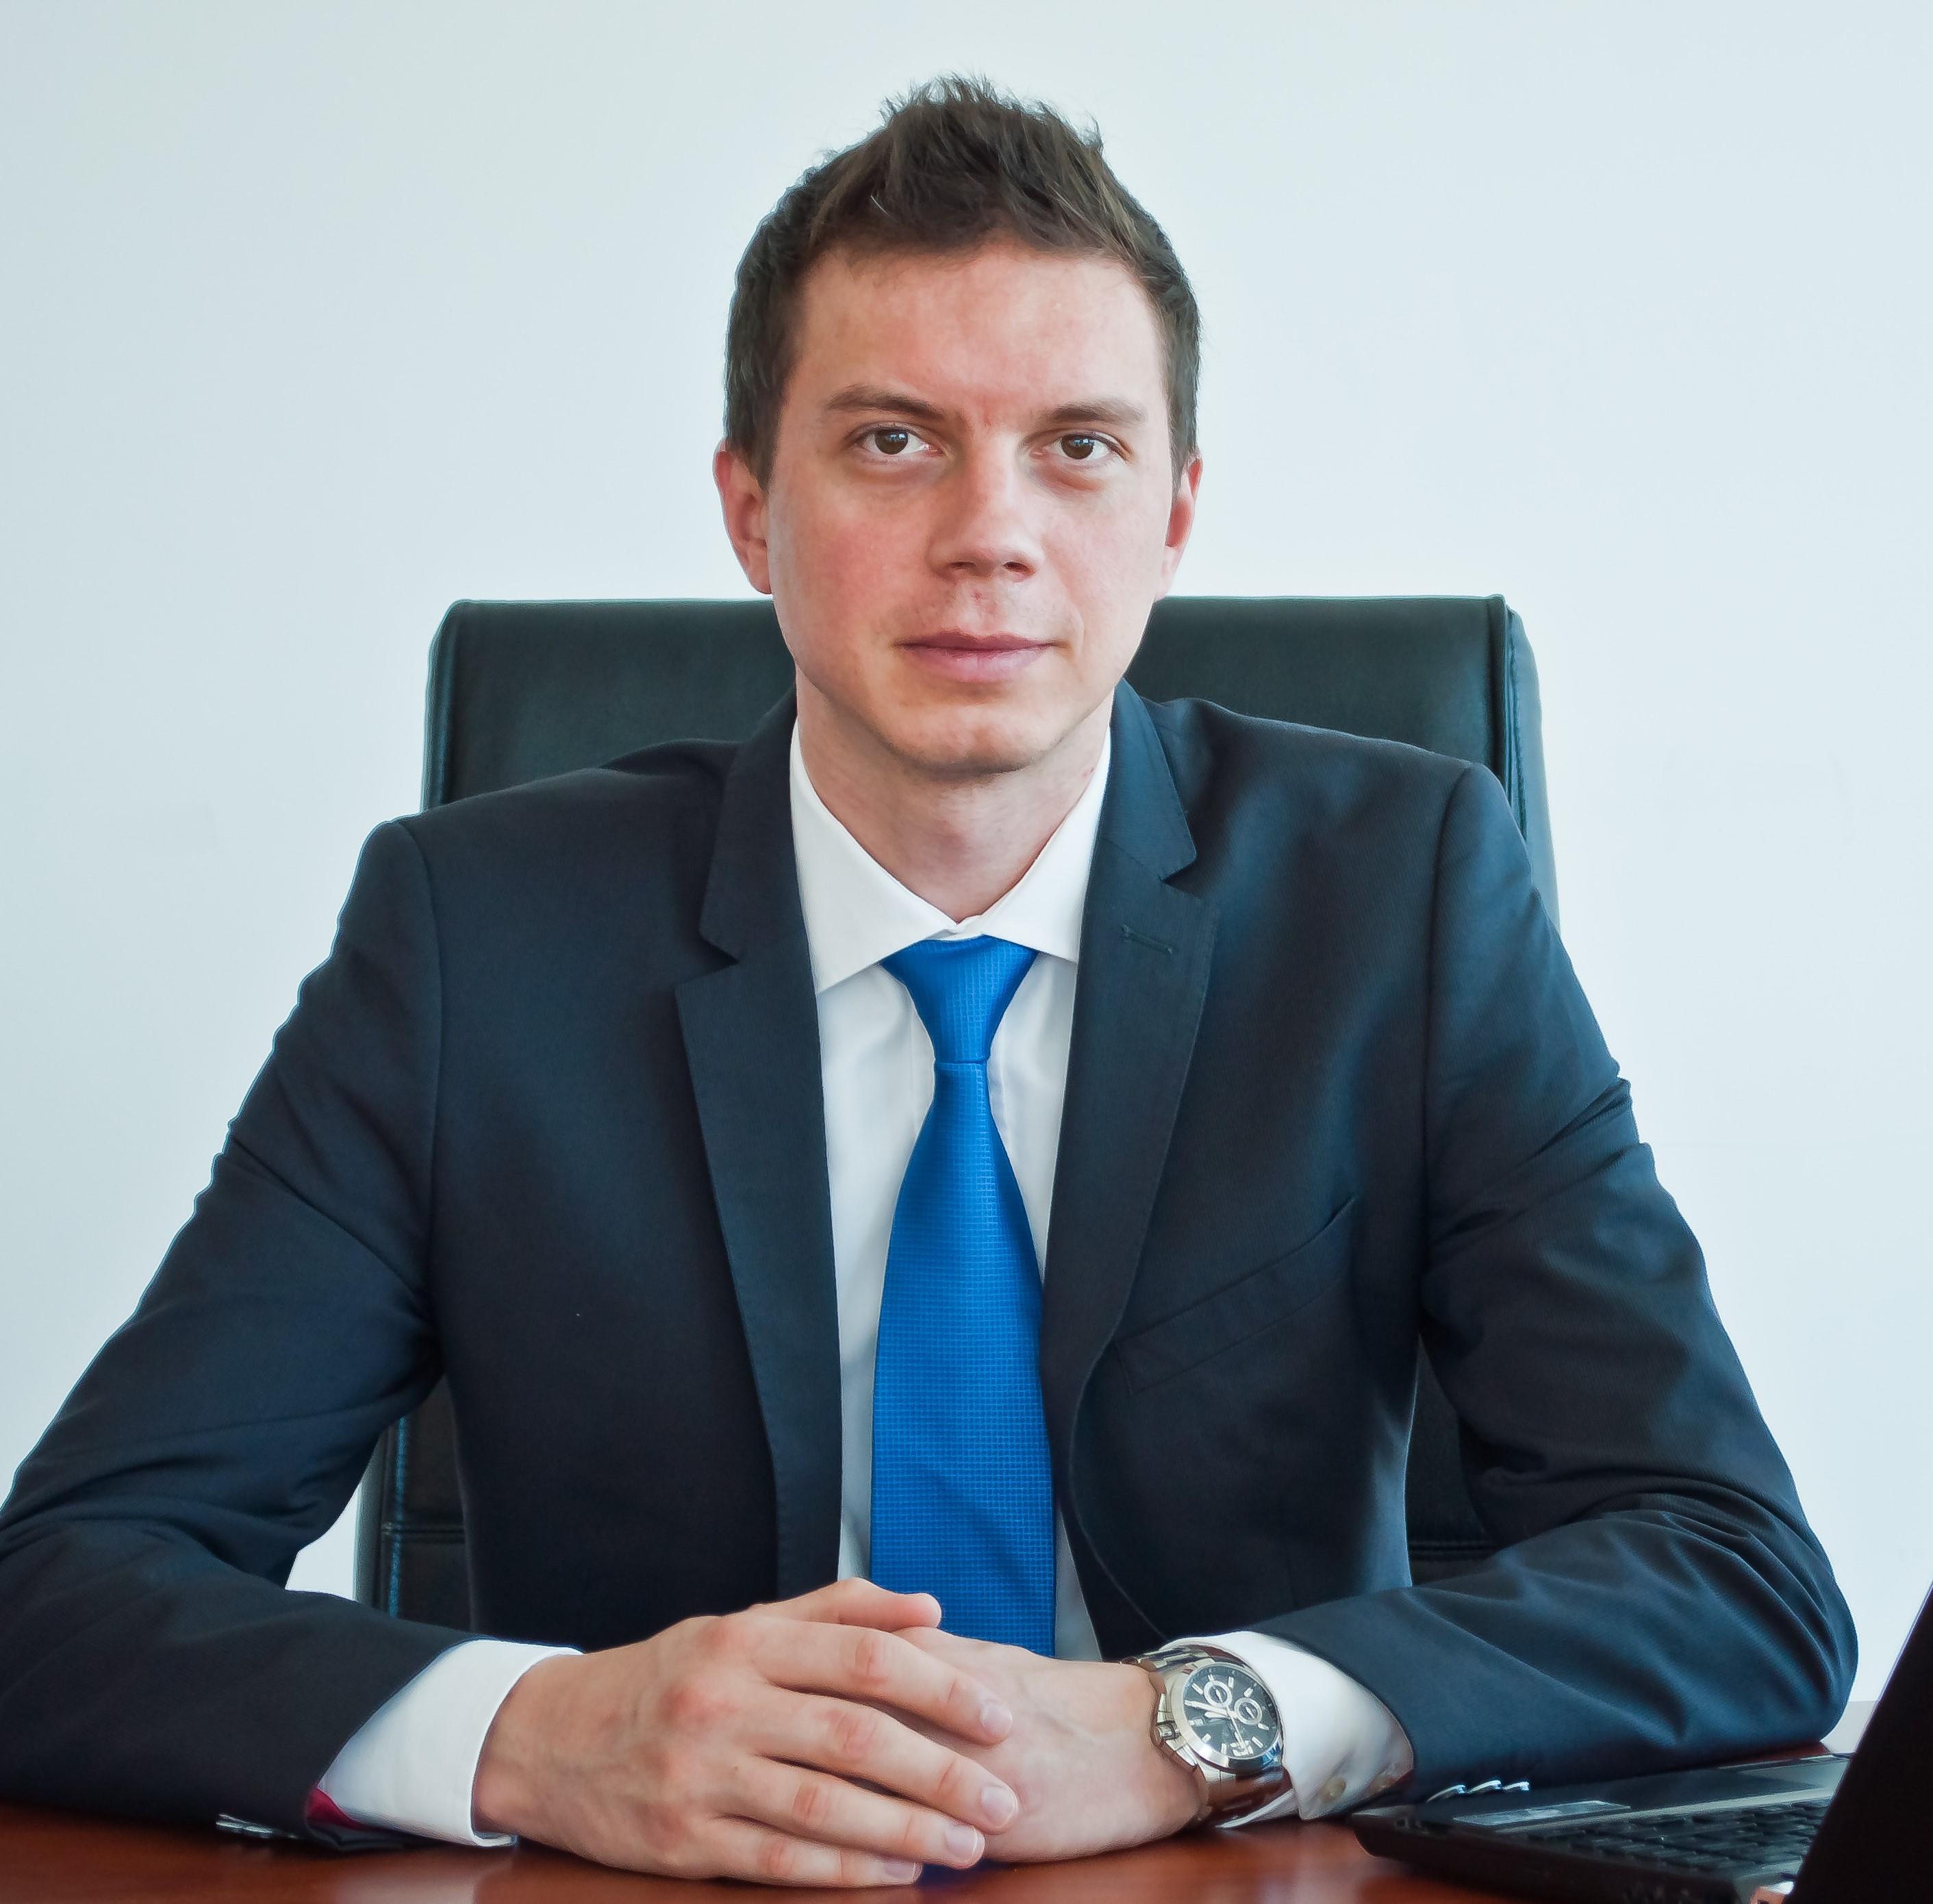 Ciprian Pîrv, General Manager Logicom România 